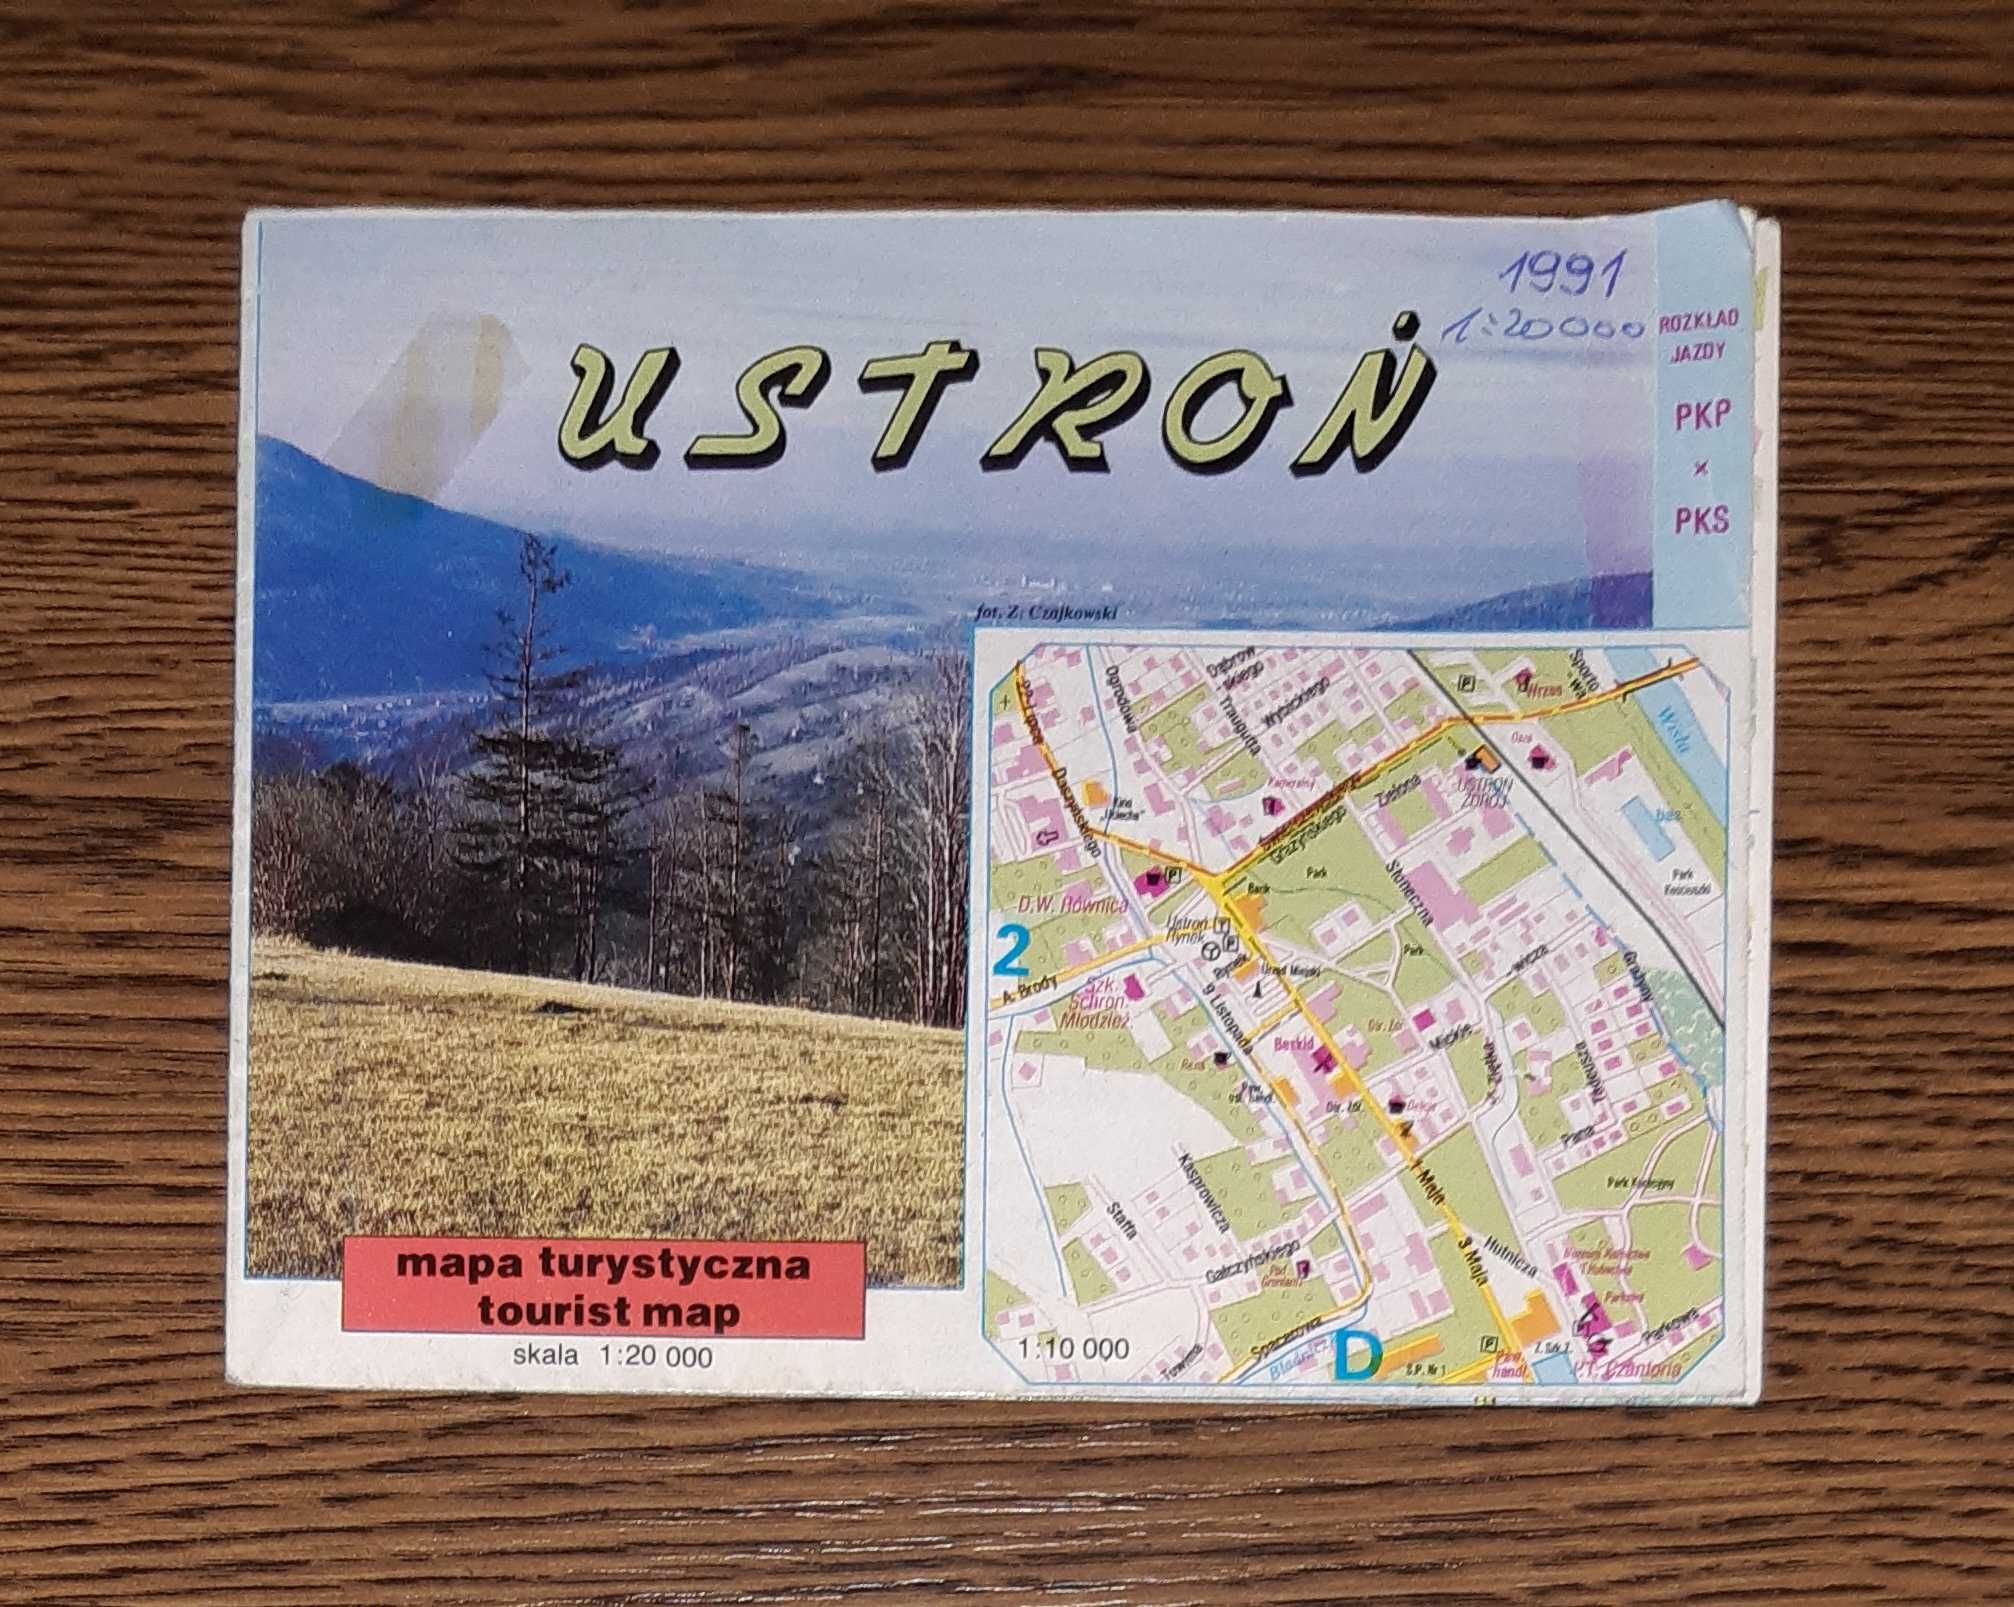 USTROŃ - mapa turystyczna 1991 w skali 1:20000